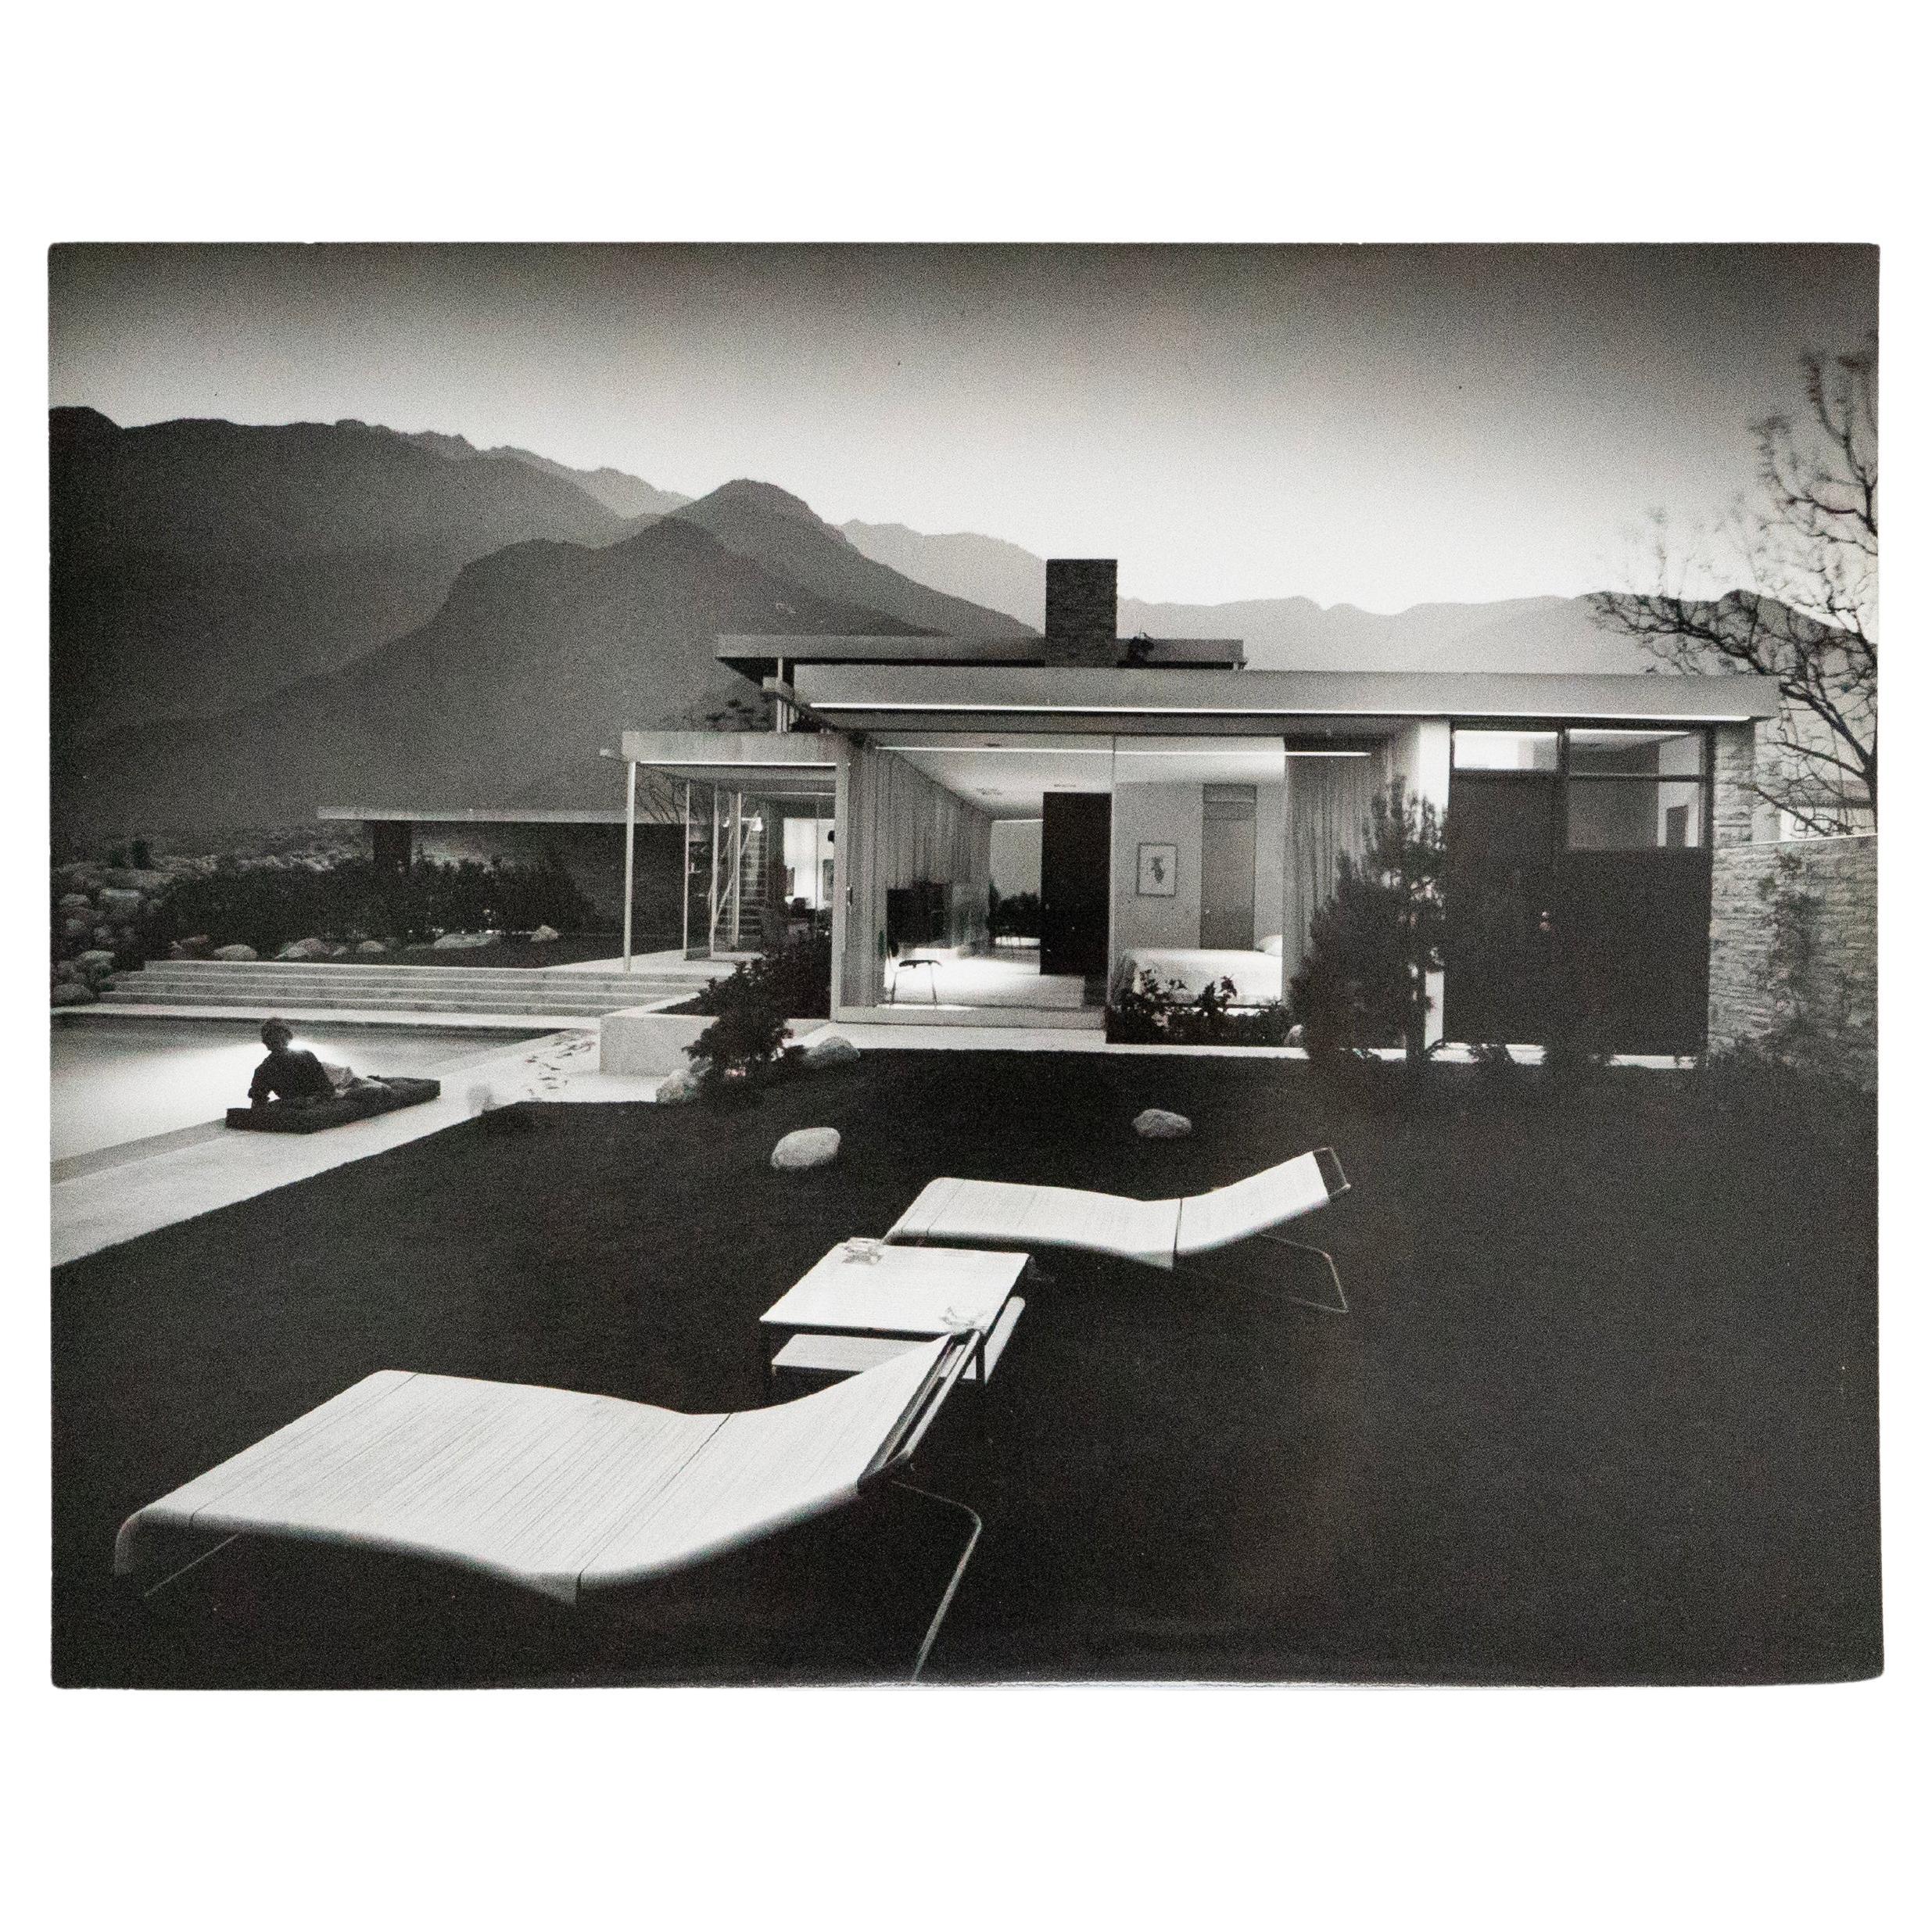 C. 1947 Photographie de Julius Shulman de la maison Kaufmann par Richard Neutra 8x10 in